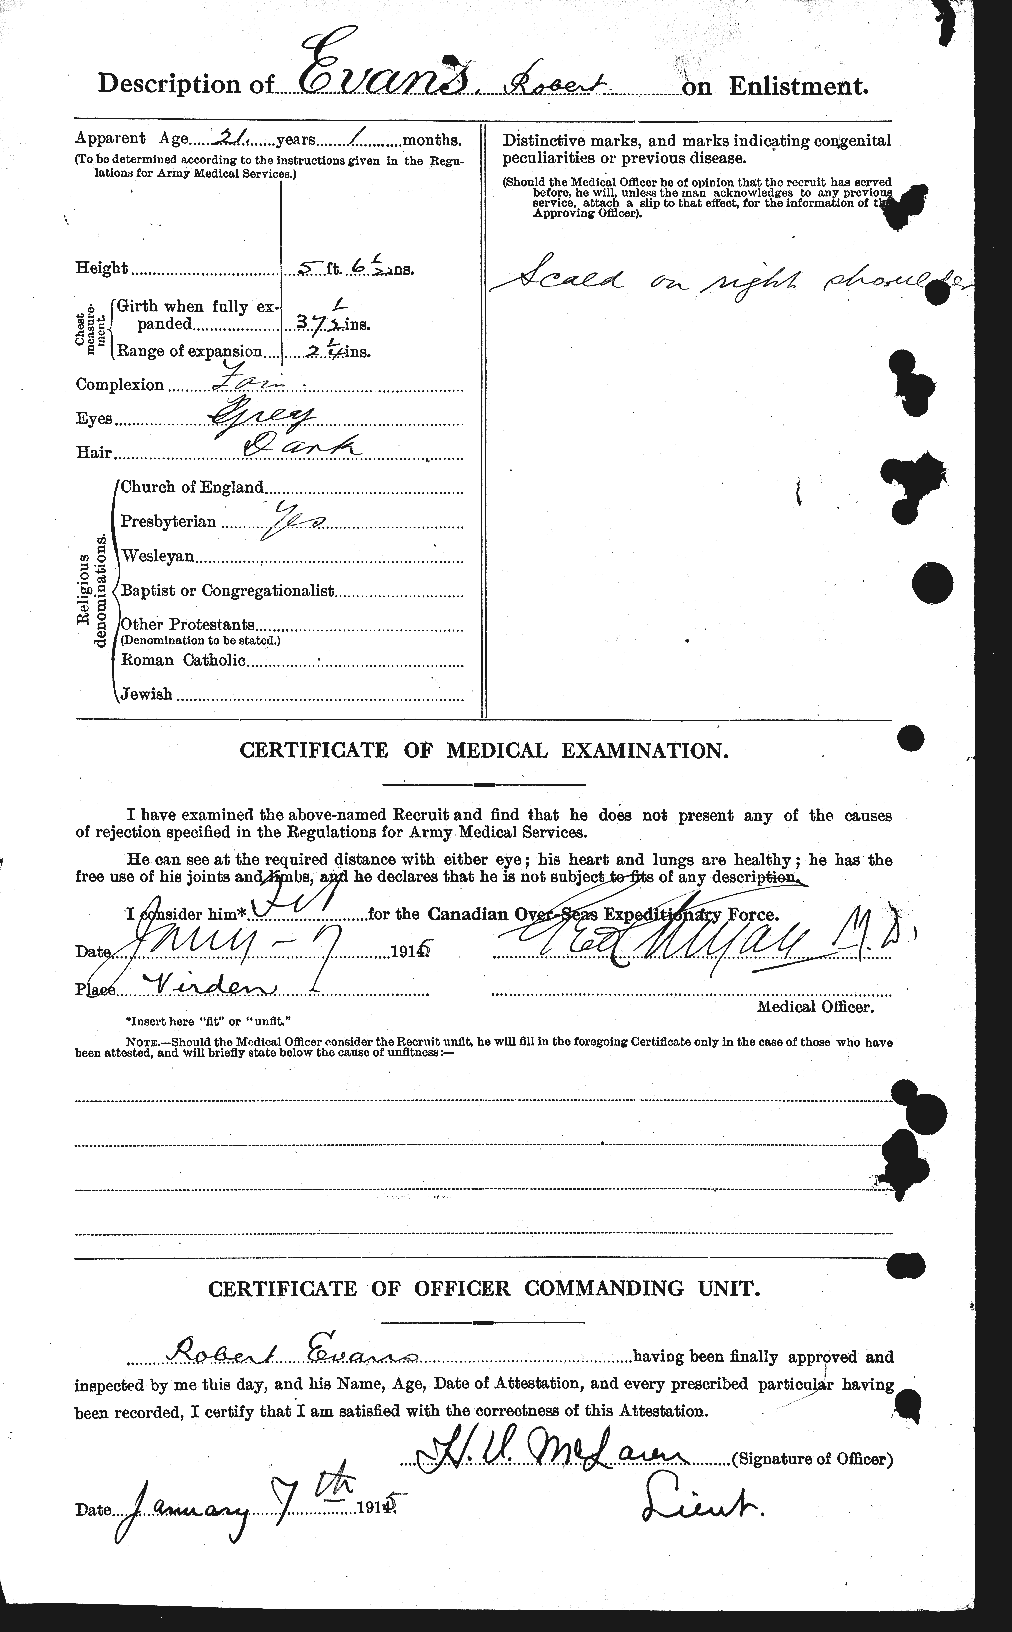 Dossiers du Personnel de la Première Guerre mondiale - CEC 313285b